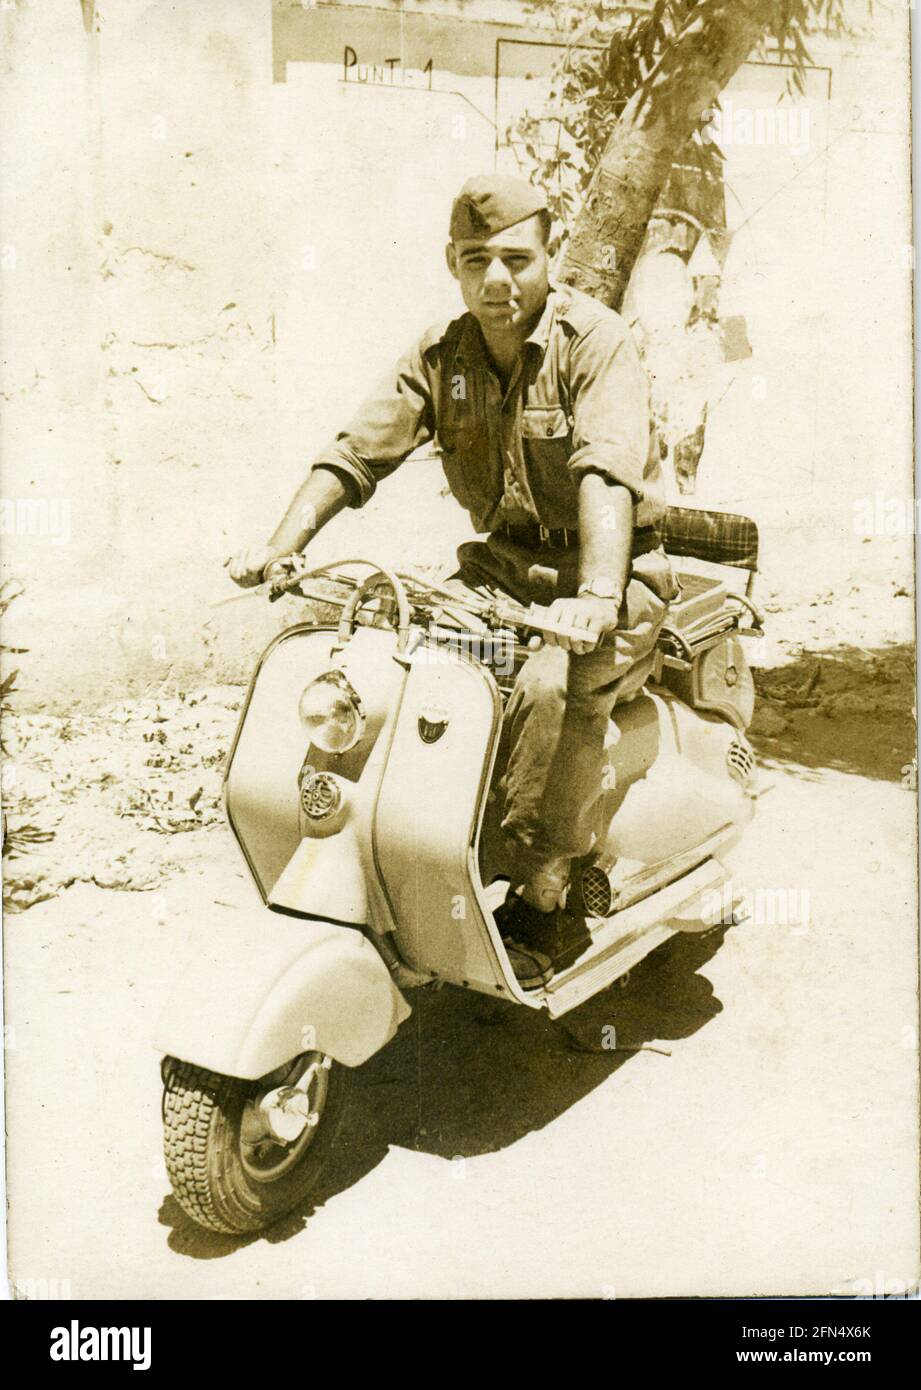 Archive image: Italian soldier on Lambretta LD 150 - Innocenti scooter - 1950's Stock Photo